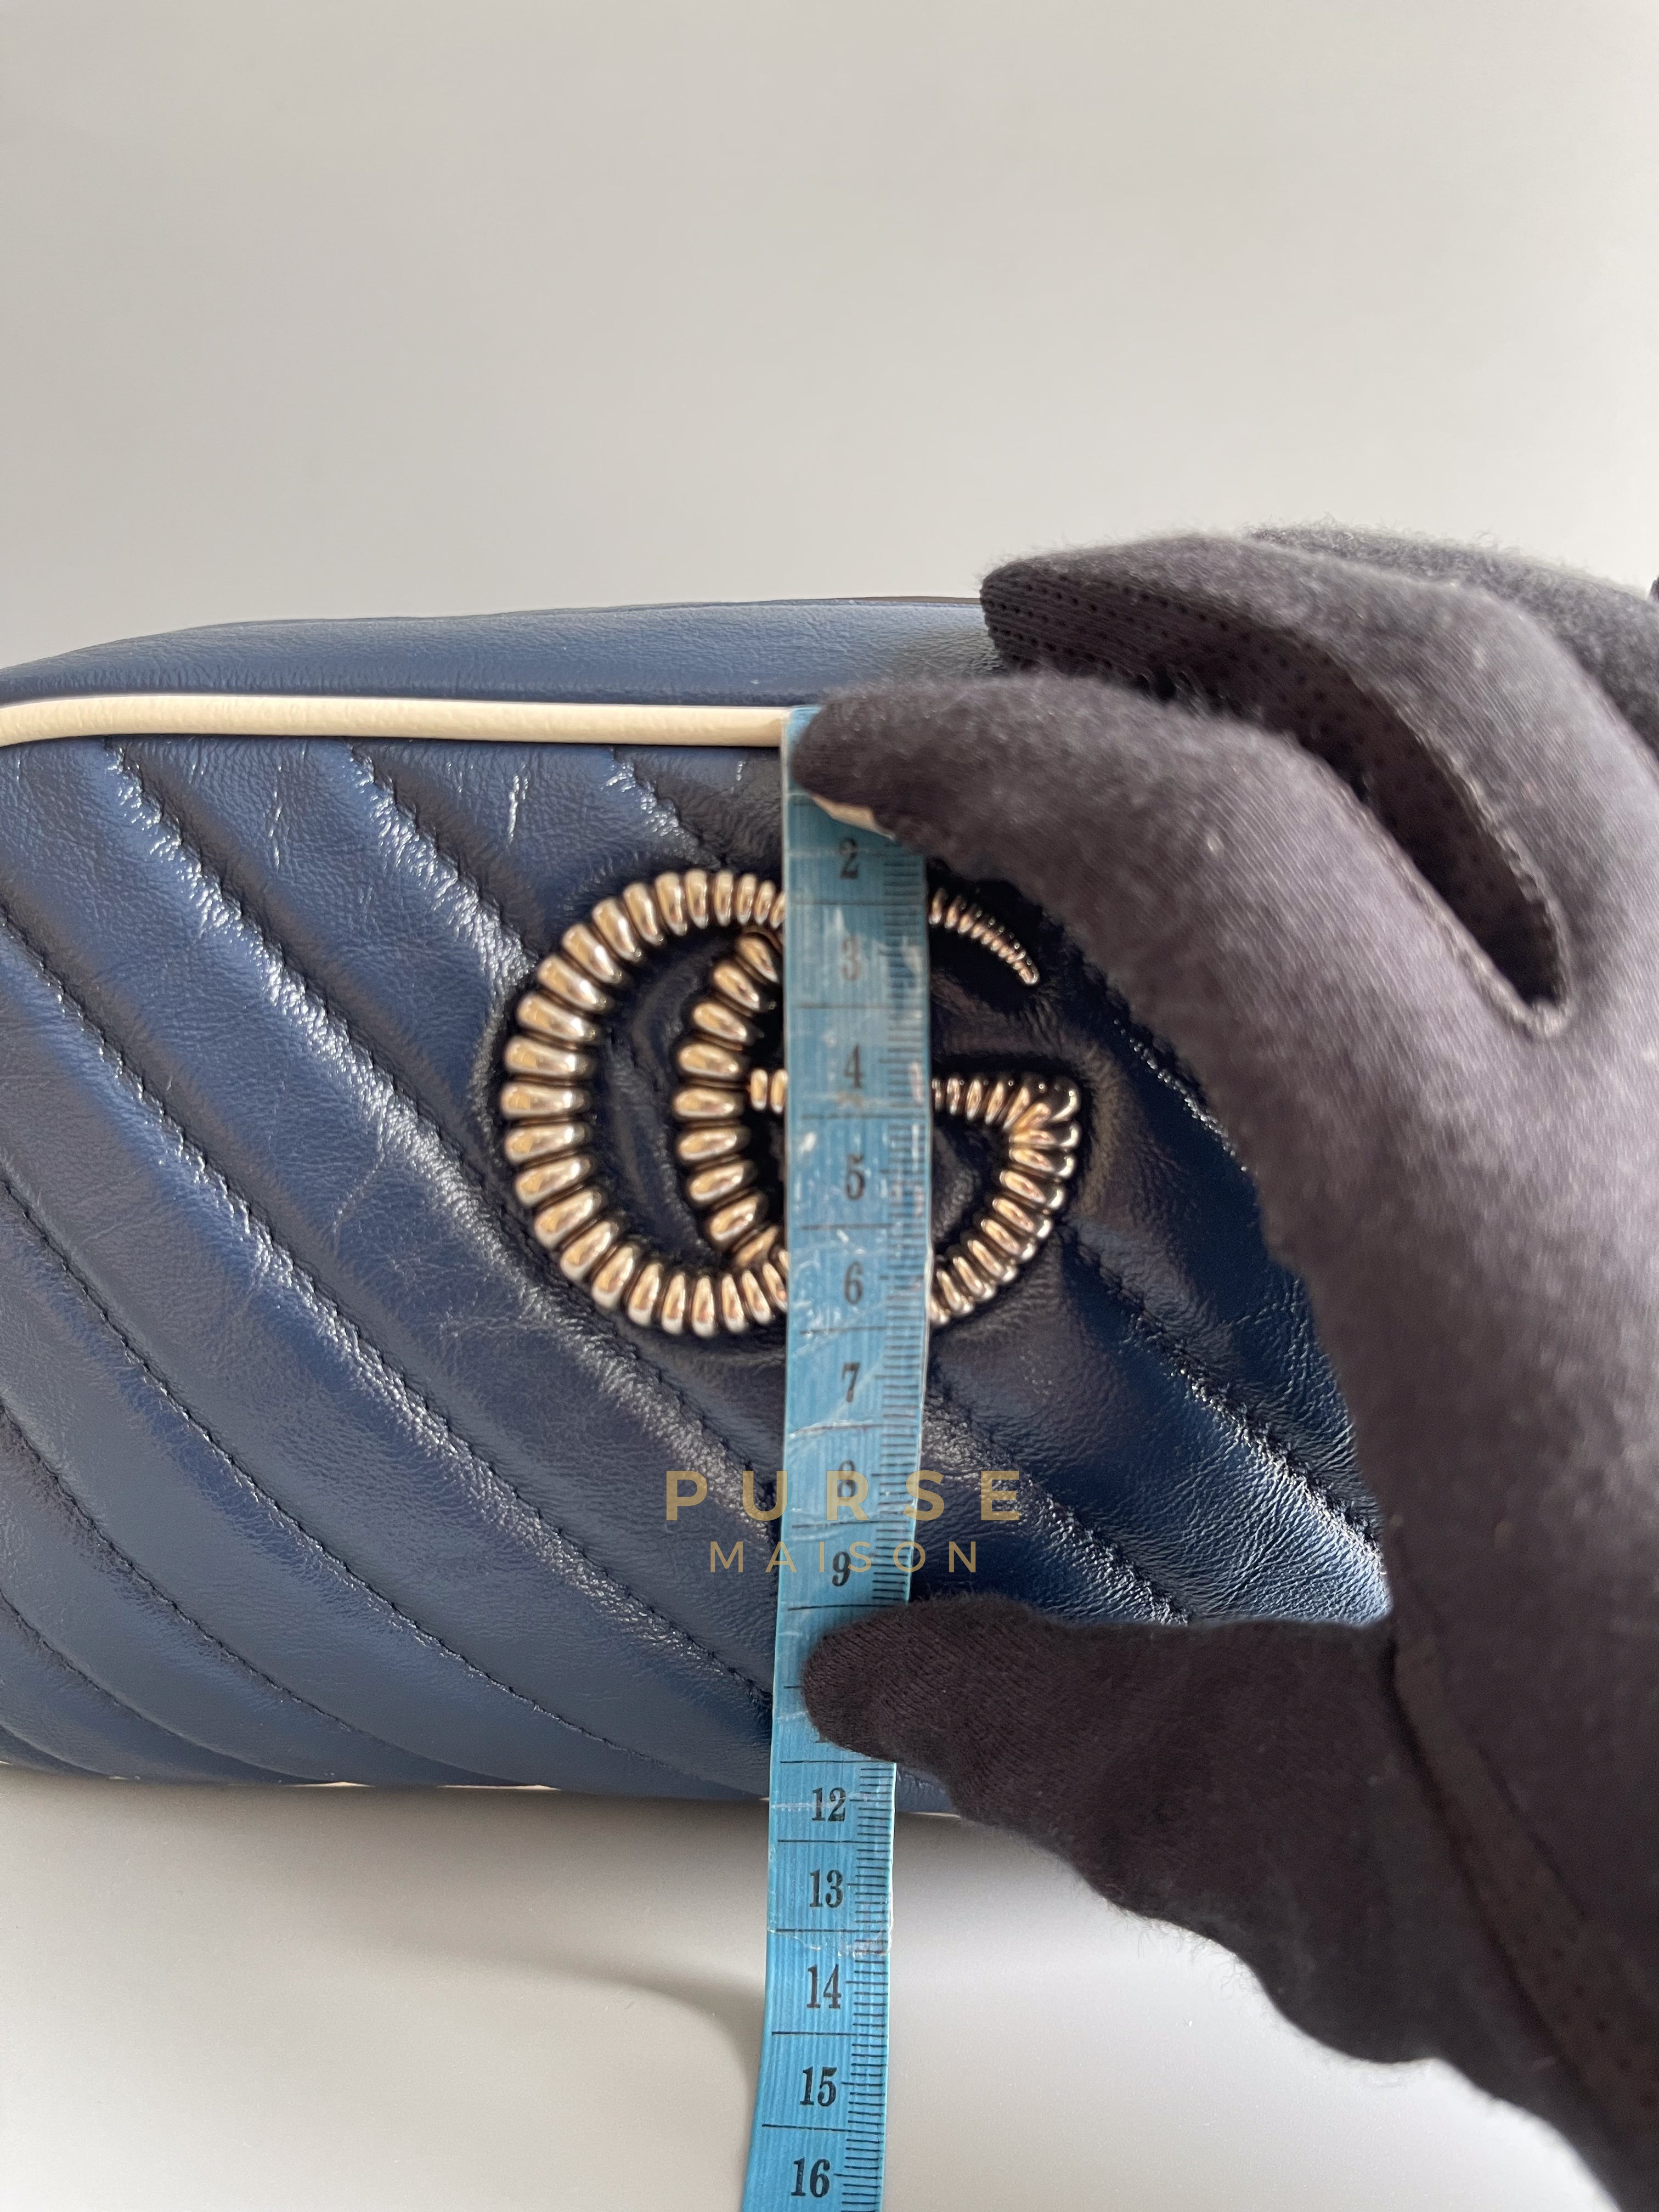 Marmont Matelasse Chain Small Diagonal Torchon (Navy Blue/White) | Purse Maison Luxury Bags Shop